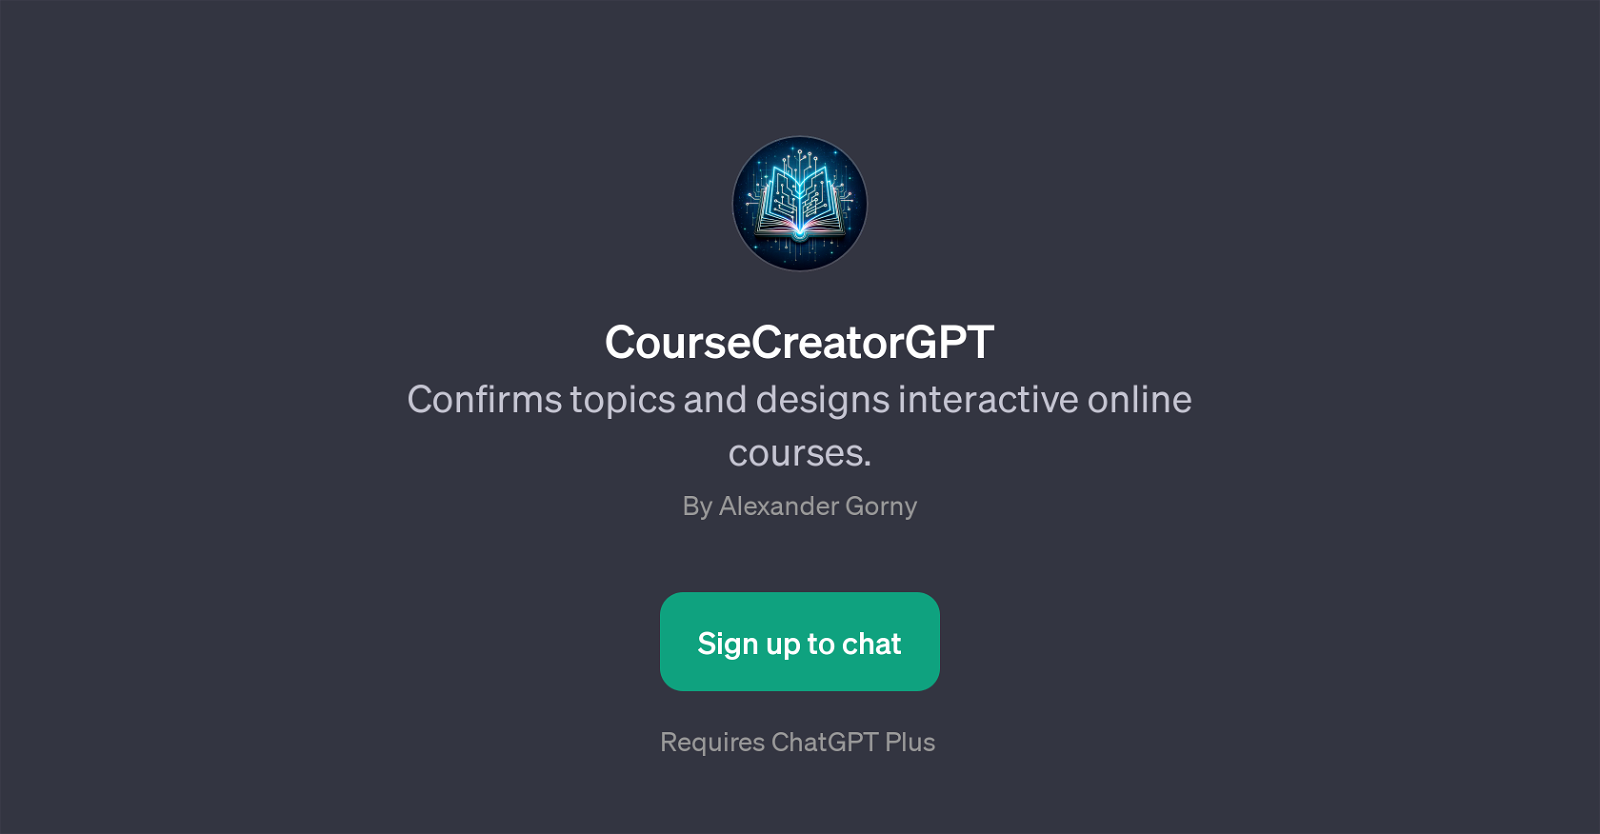 CourseCreatorGPT website